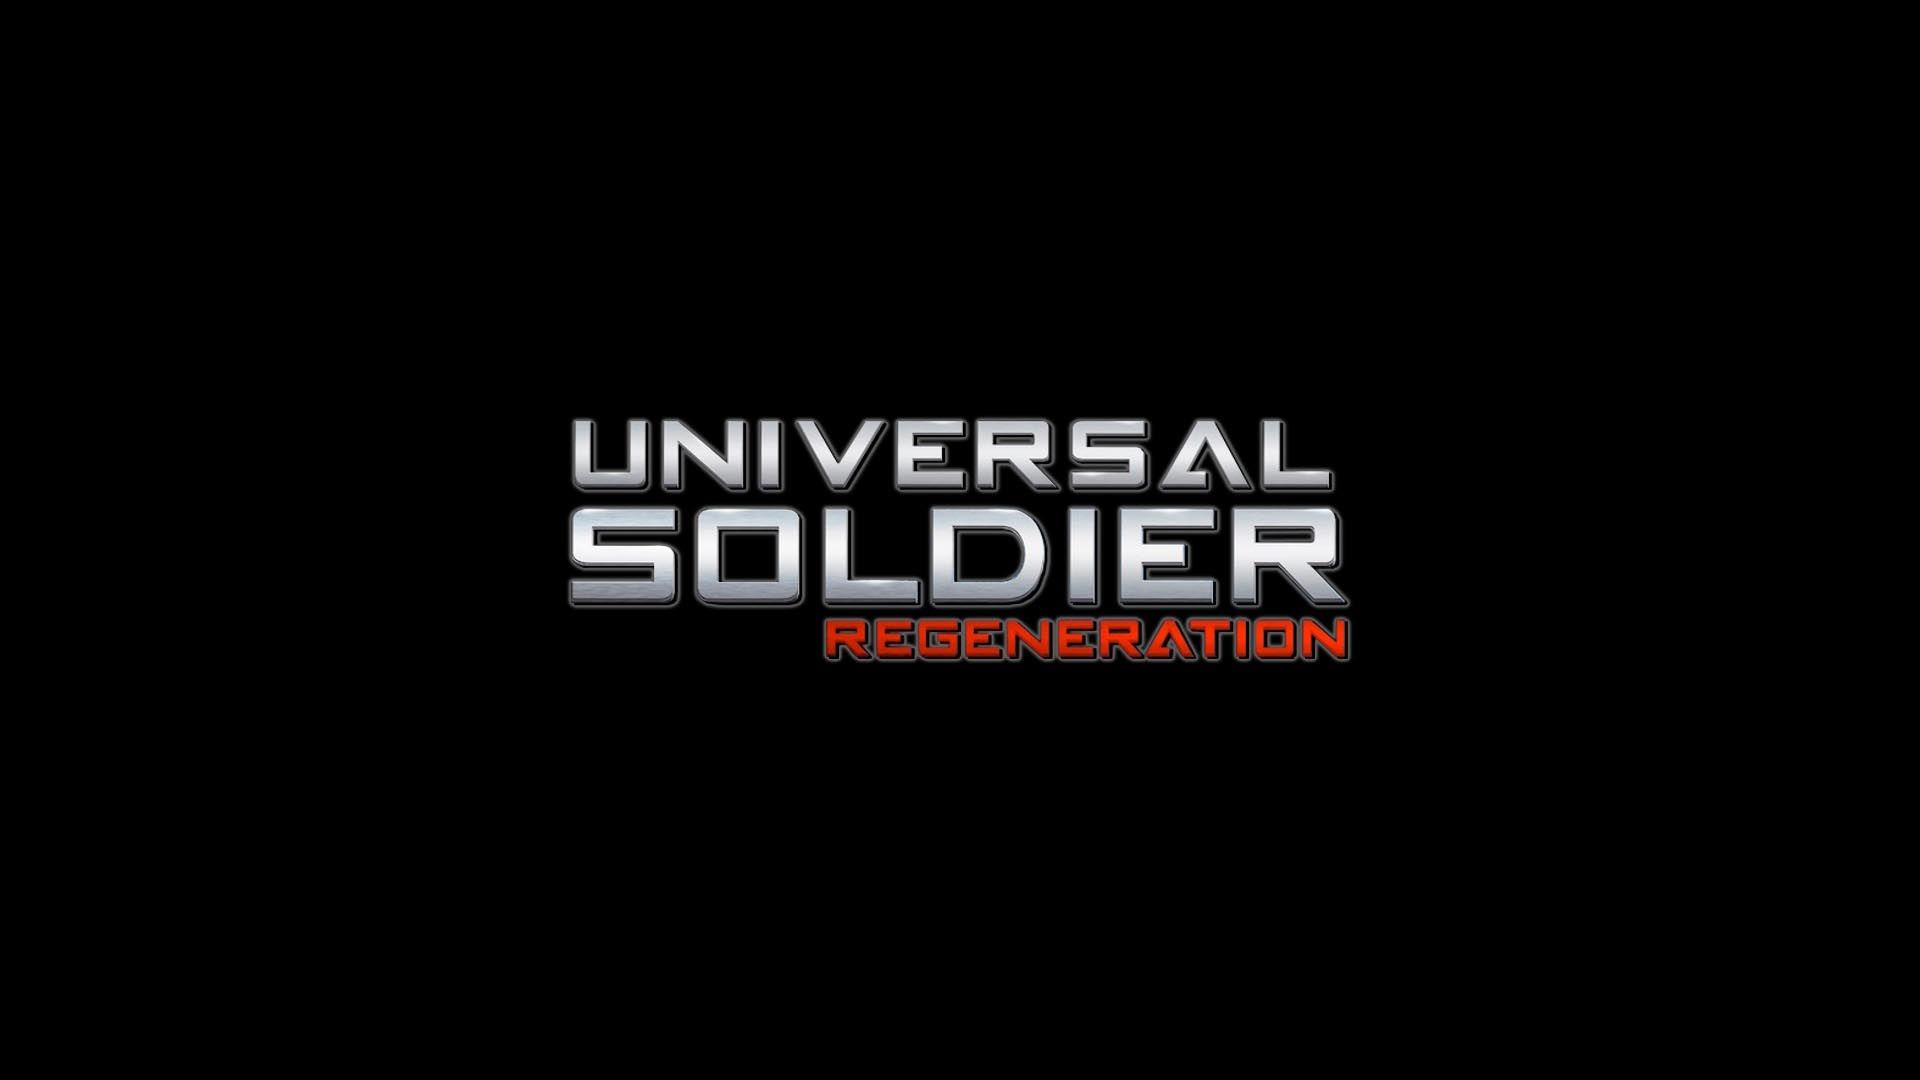 Movie Universal Soldier Regeneration Wallpaper:1920x1080